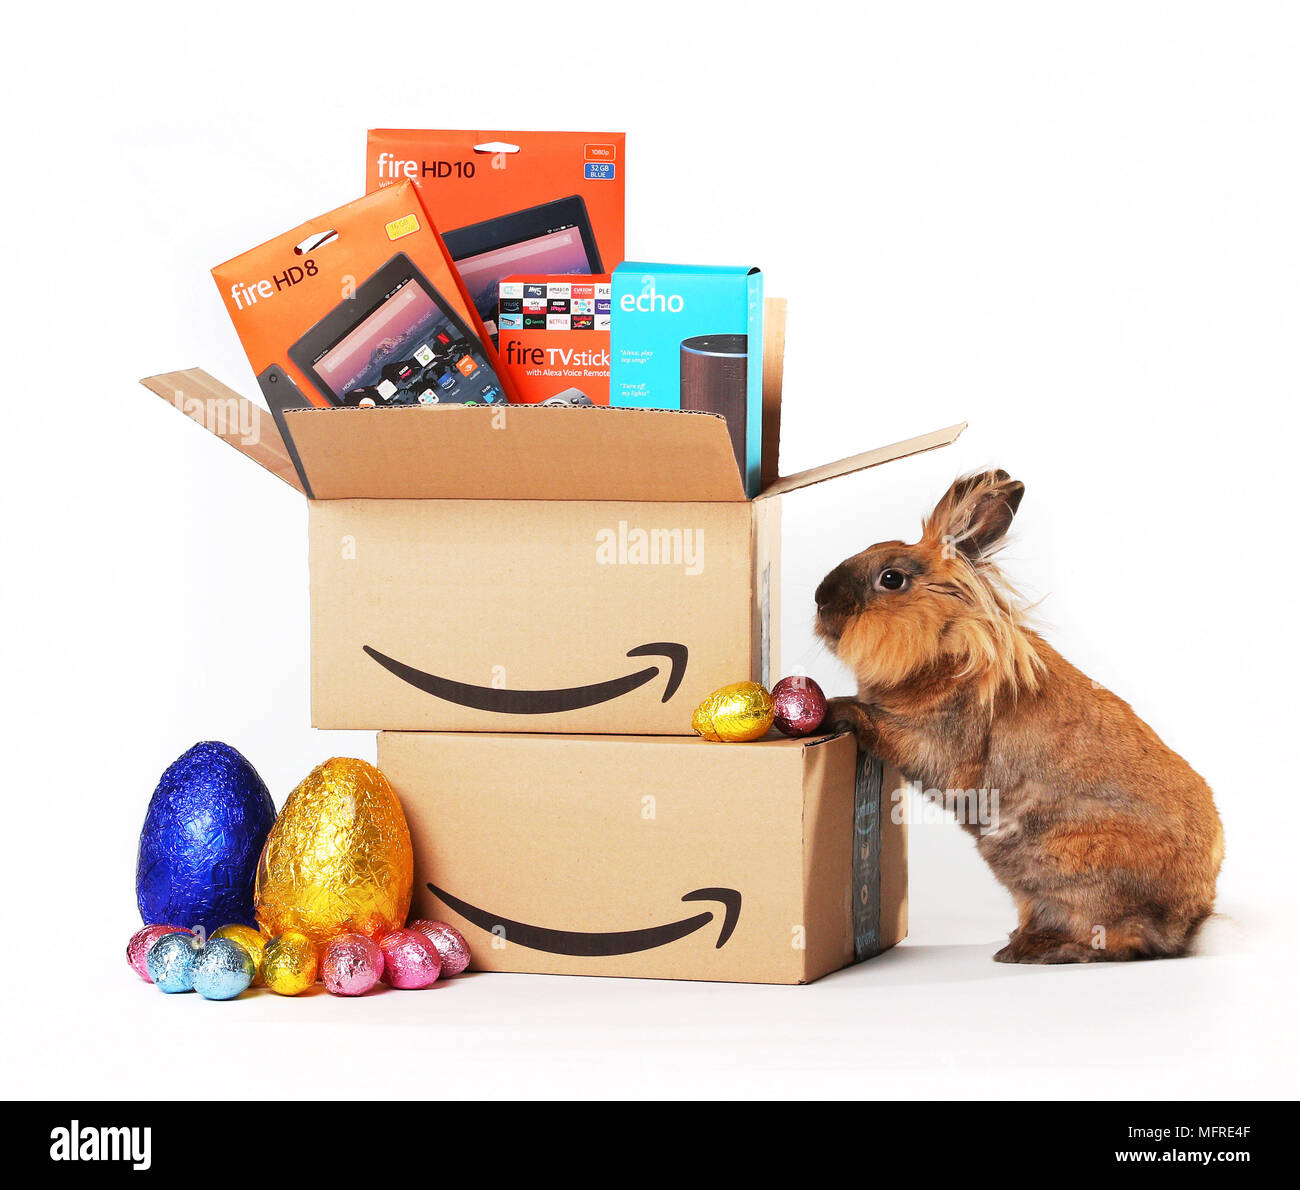 Der Amazon.co.uk frühe Ostern Verkauf läuft bis 23:59 Uhr am Montag, den  26. März, während der Verkauf von neuen "Abschlüsse des Tages" alle 24  Stunden während der gesamten Laufzeit von den neuesten